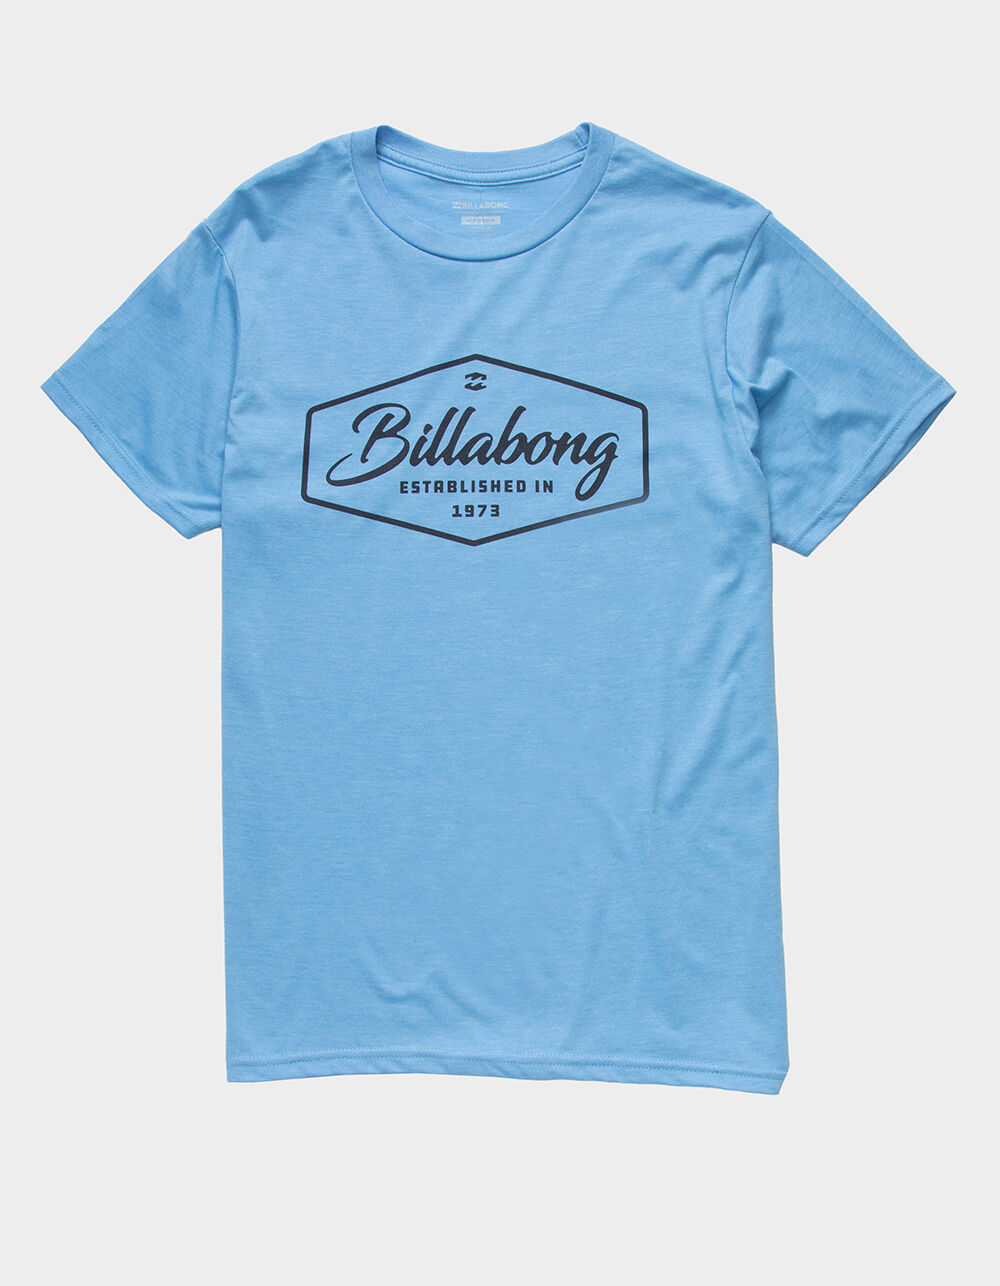 sekstant Strengt lytter BILLABONG Trademark Mens T-Shirt - LIGHT BLUE | Tillys